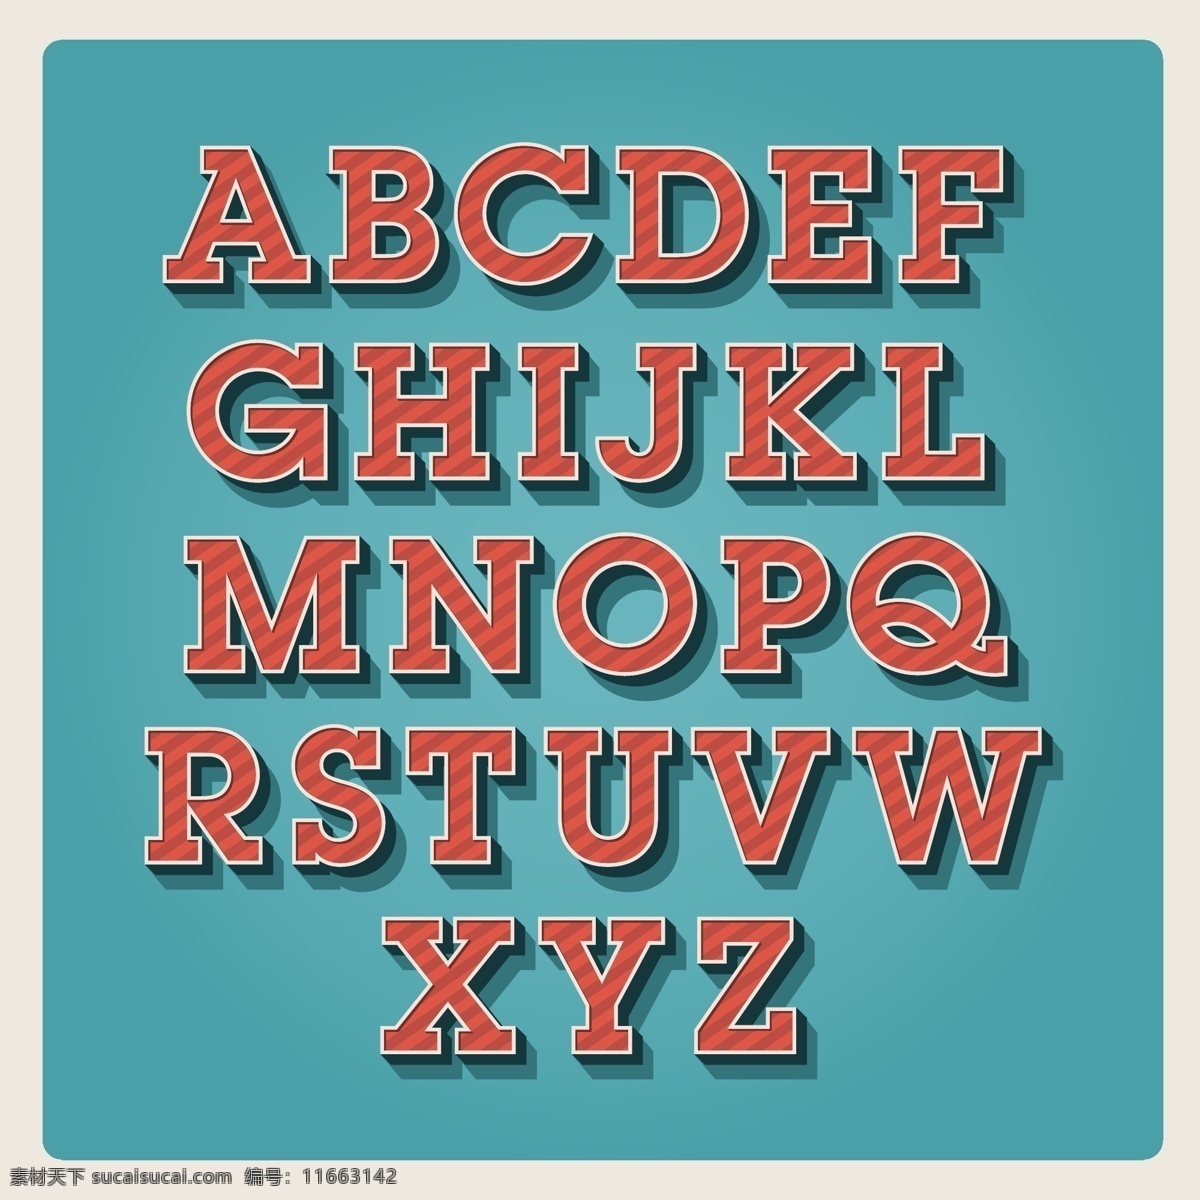 立体英文字母 立体 英文字母 字母 英文 艺术字体 矢量字母 书画文字 文化艺术 矢量素材 青色 天蓝色